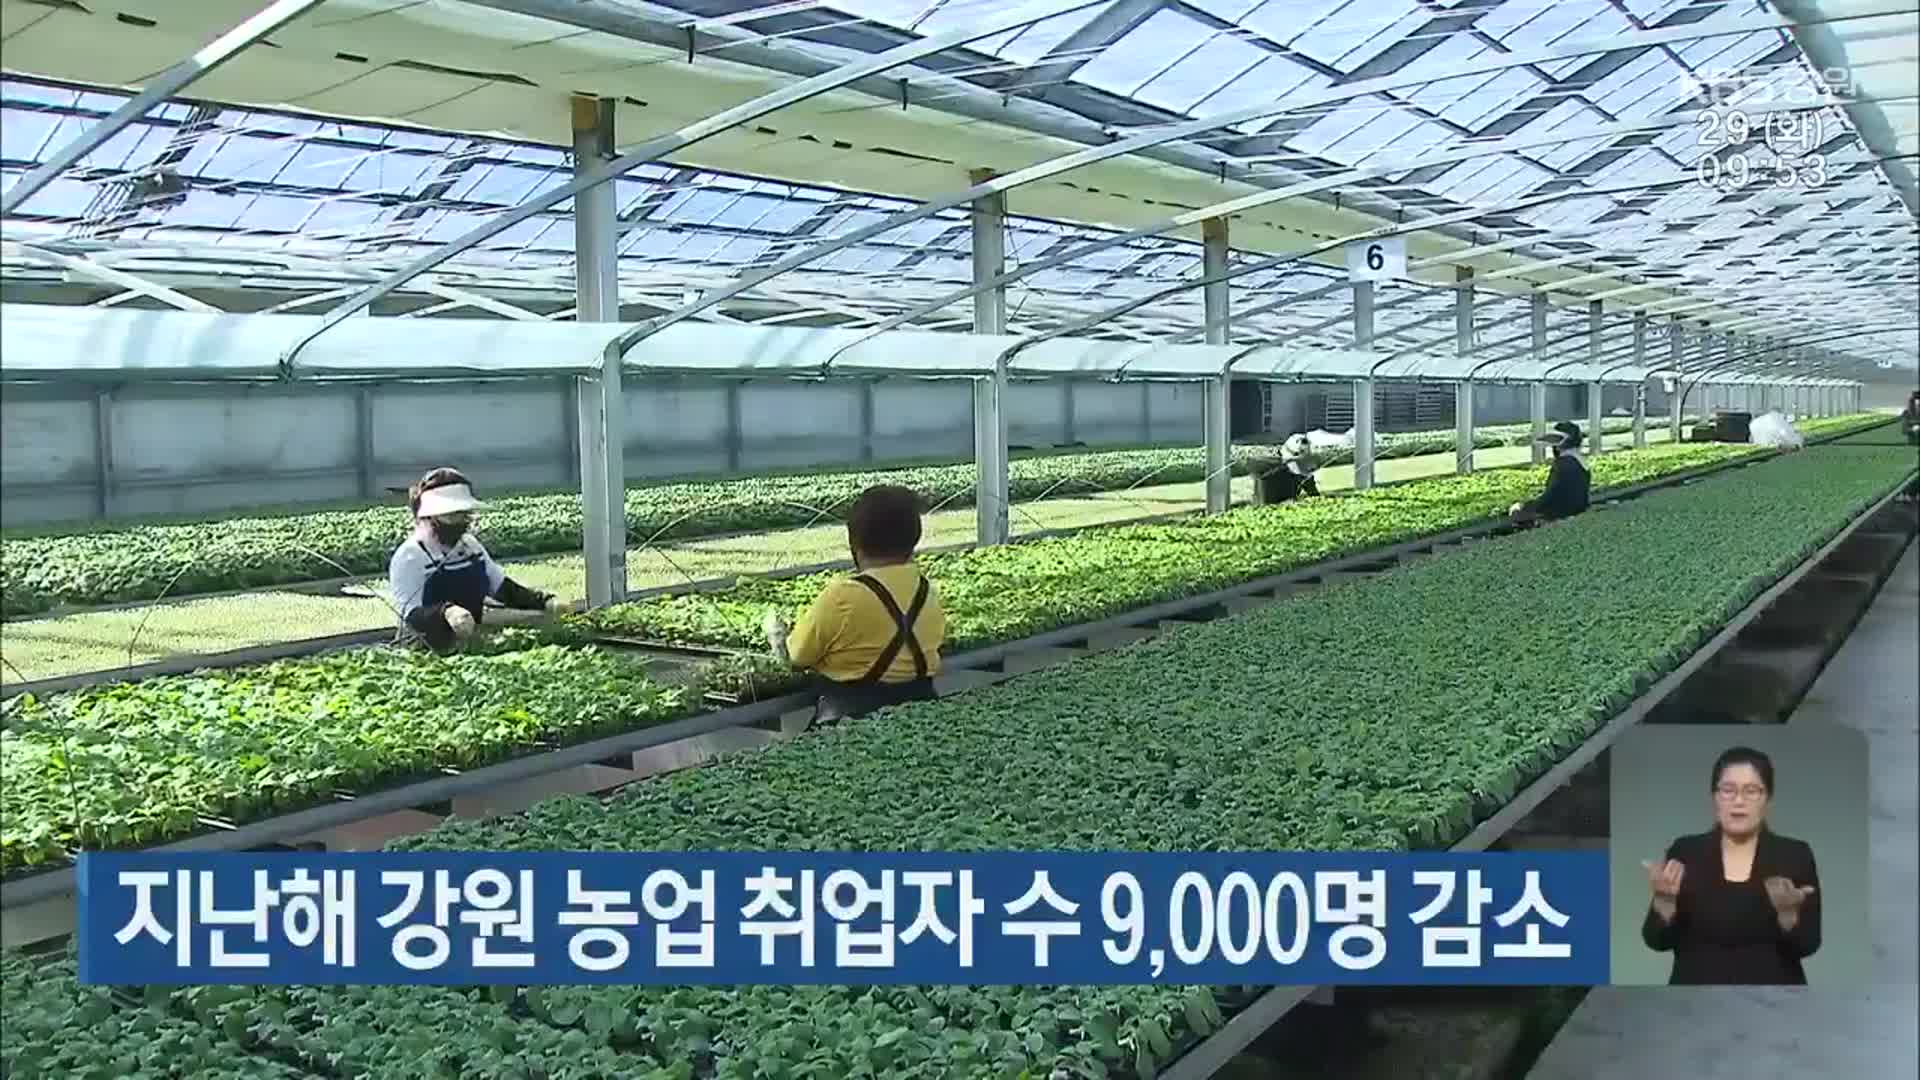 지난해 강원 농업 취업자 수 9,000명 감소